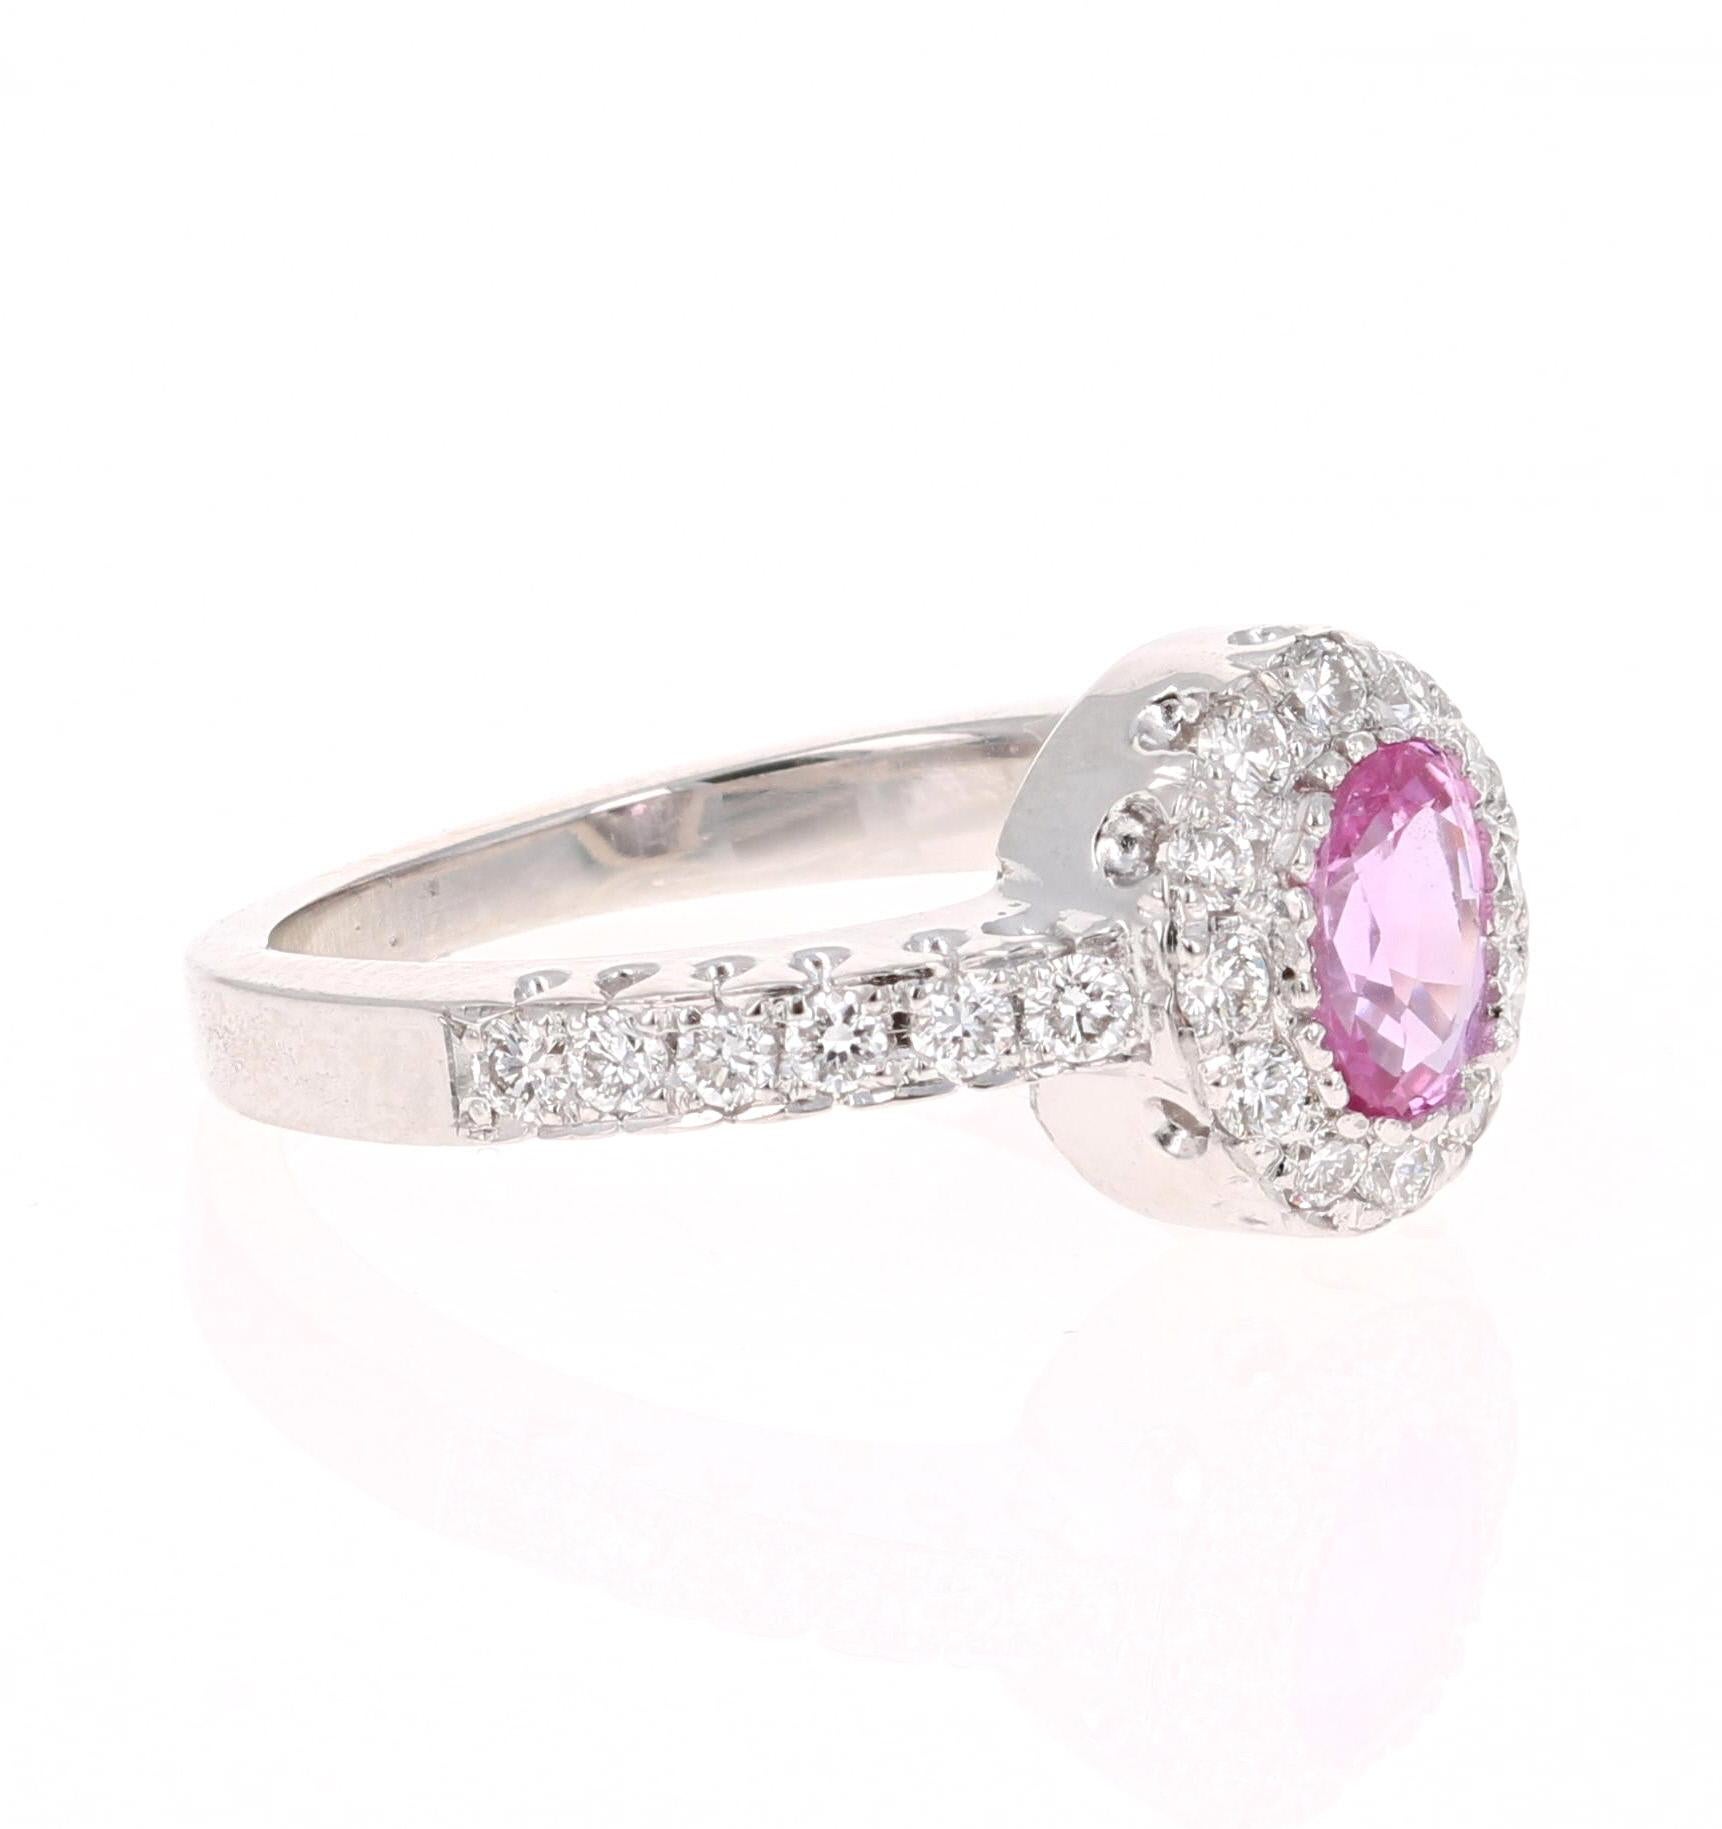 Hübscher Ring mit rosa Saphir und Diamant! Kann ein Alltagsring oder ein einzigartiger Verlobungsring sein!

Dieser schöne Ring hat eine Oval Cut Pink Sapphire, die 0,69 Karat wiegt. 

Der Ring ist mit 24 Diamanten im Rundschliff mit einem Gewicht